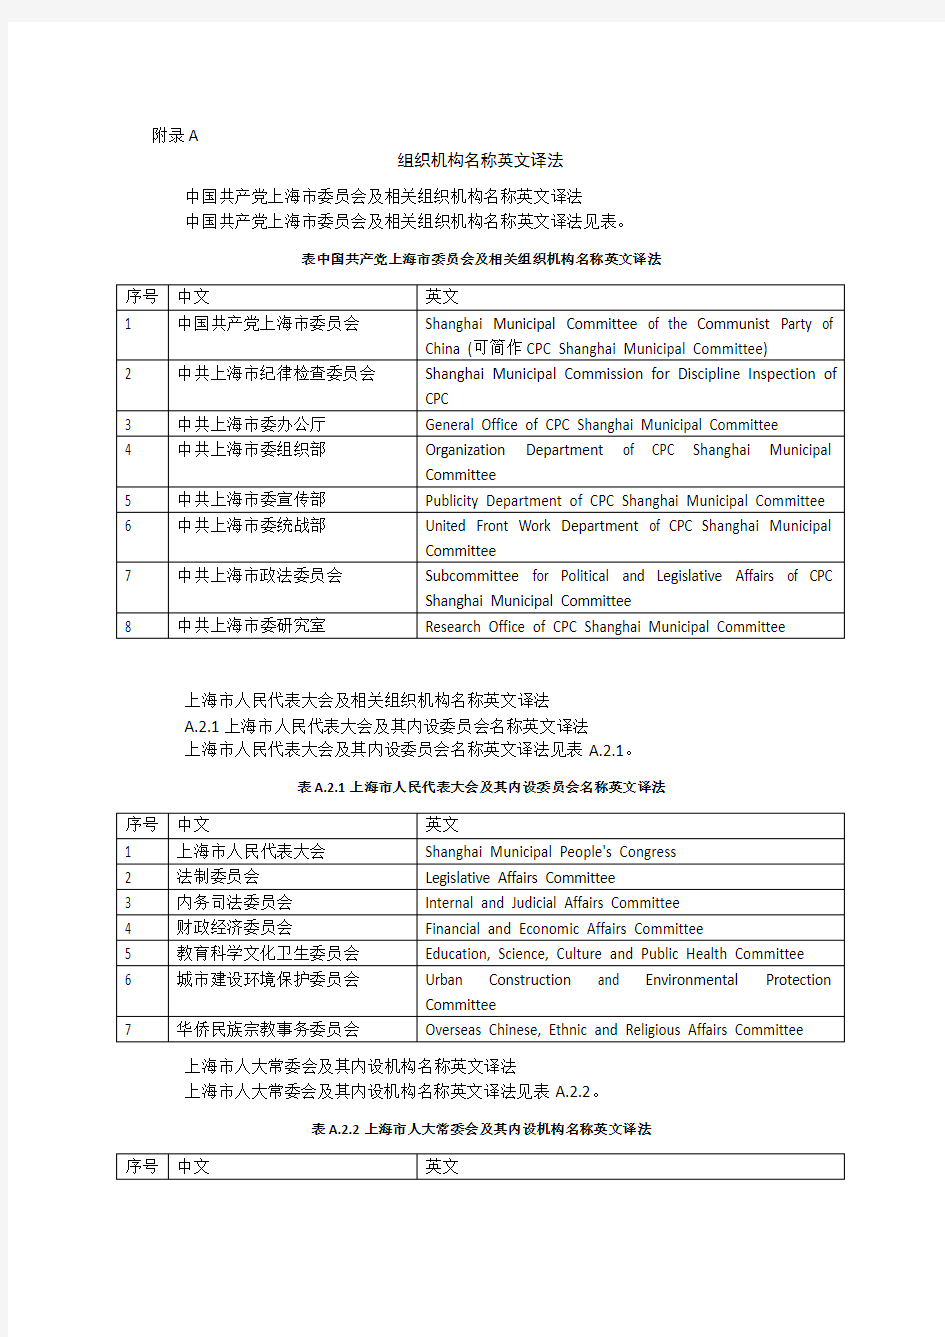 上海市各机构名称英译